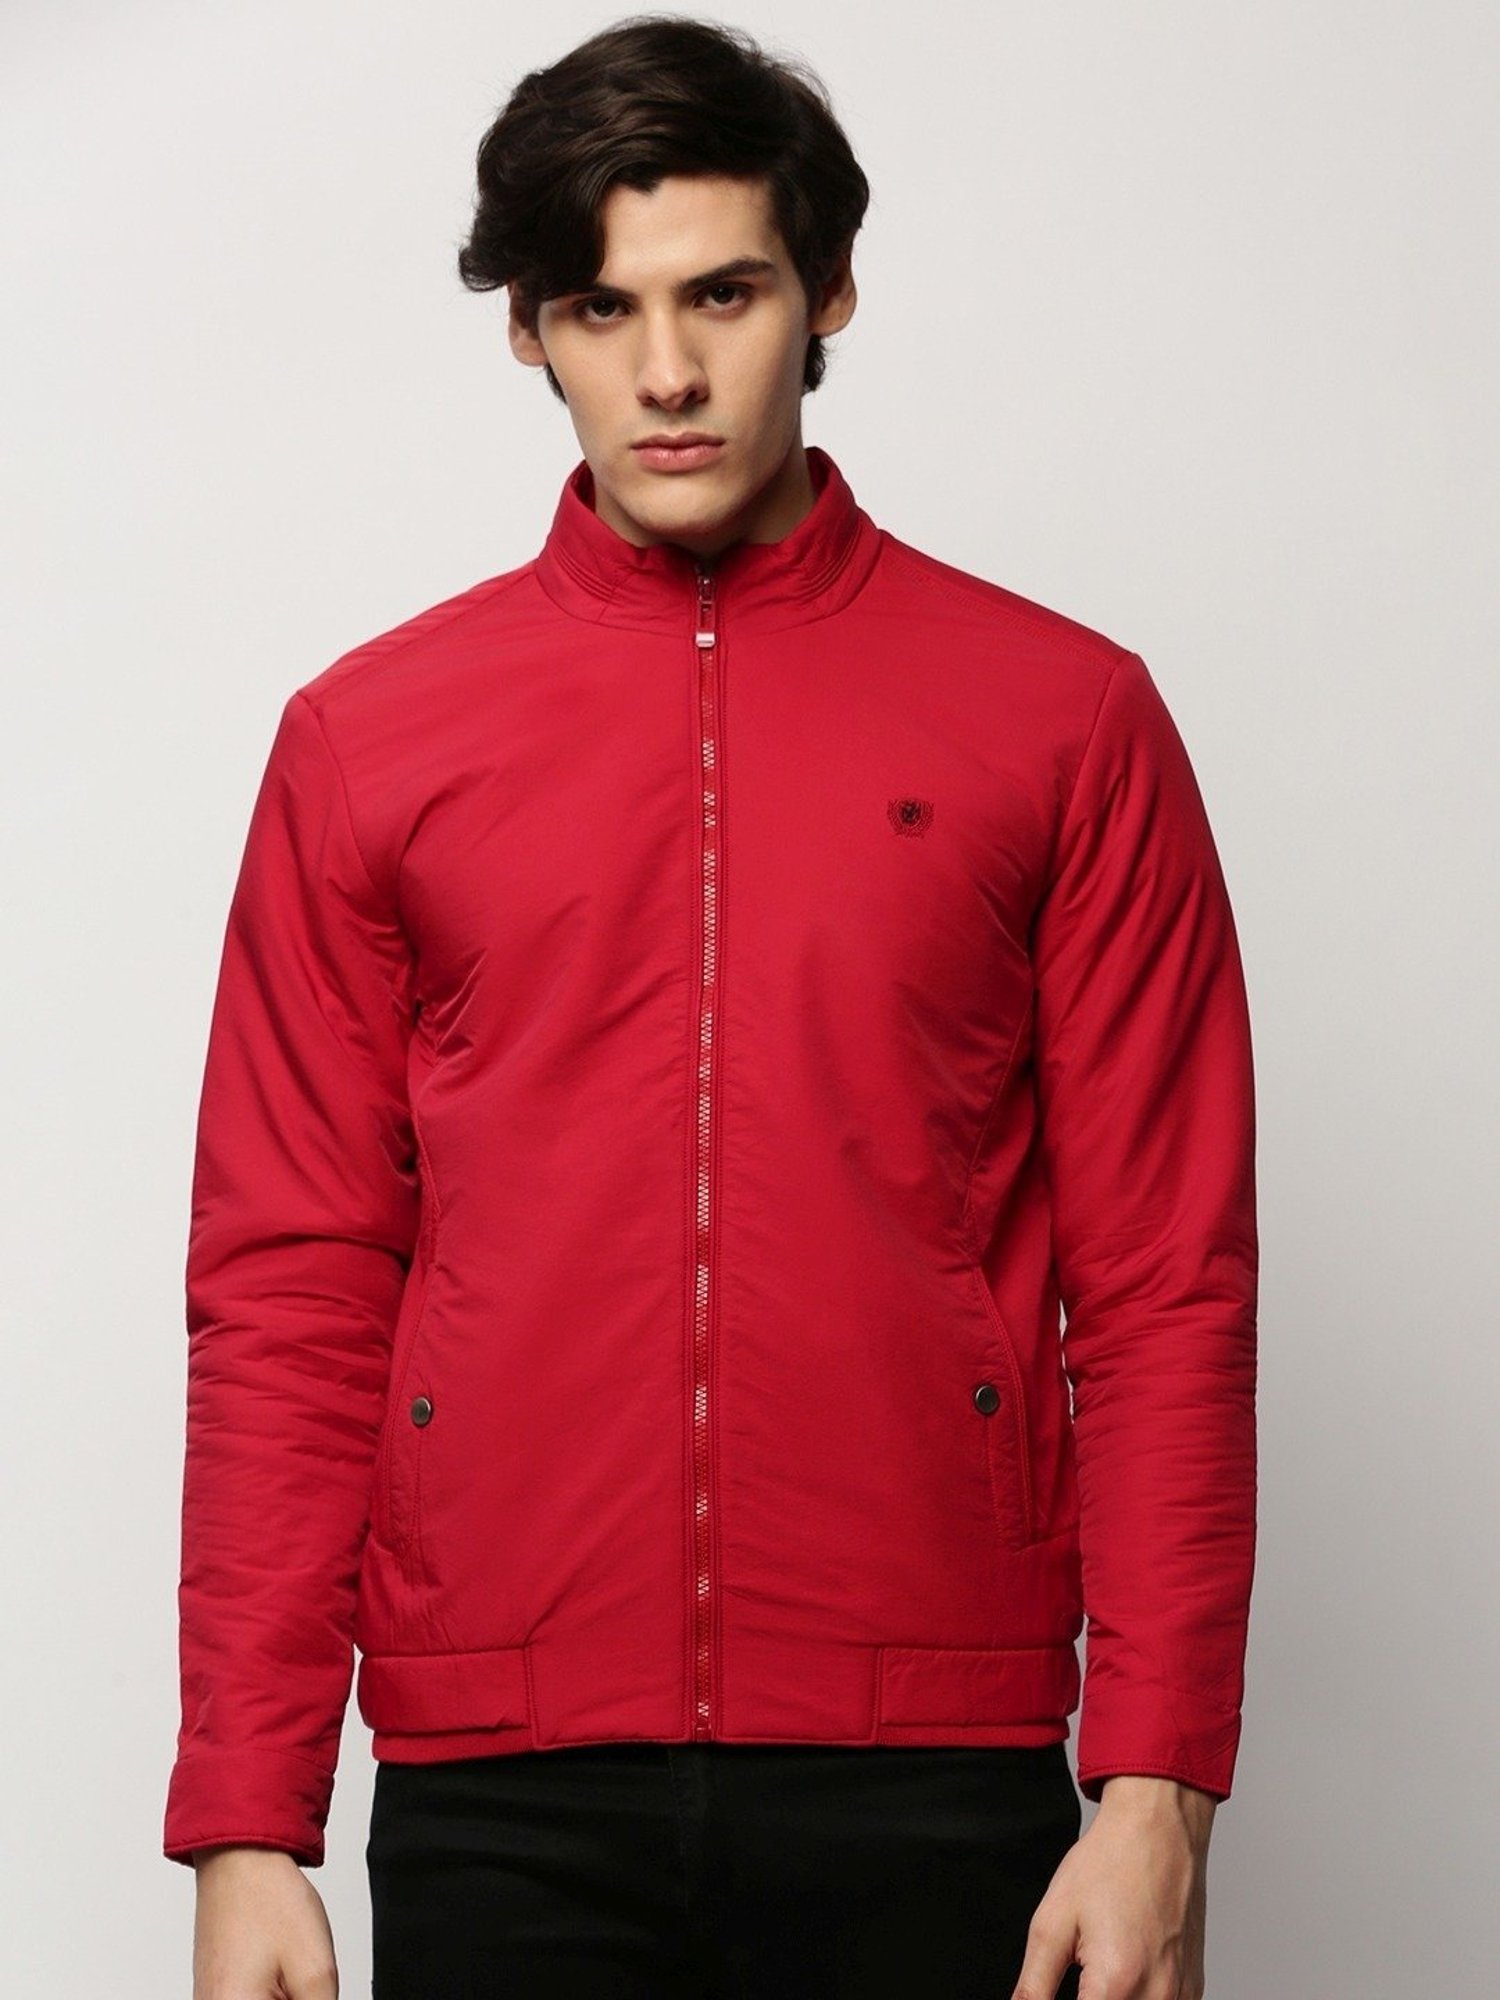 Buy Park Avenue Red Full Sleeves Mandarin Collar Jacket for Men's Online @  Tata CLiQ